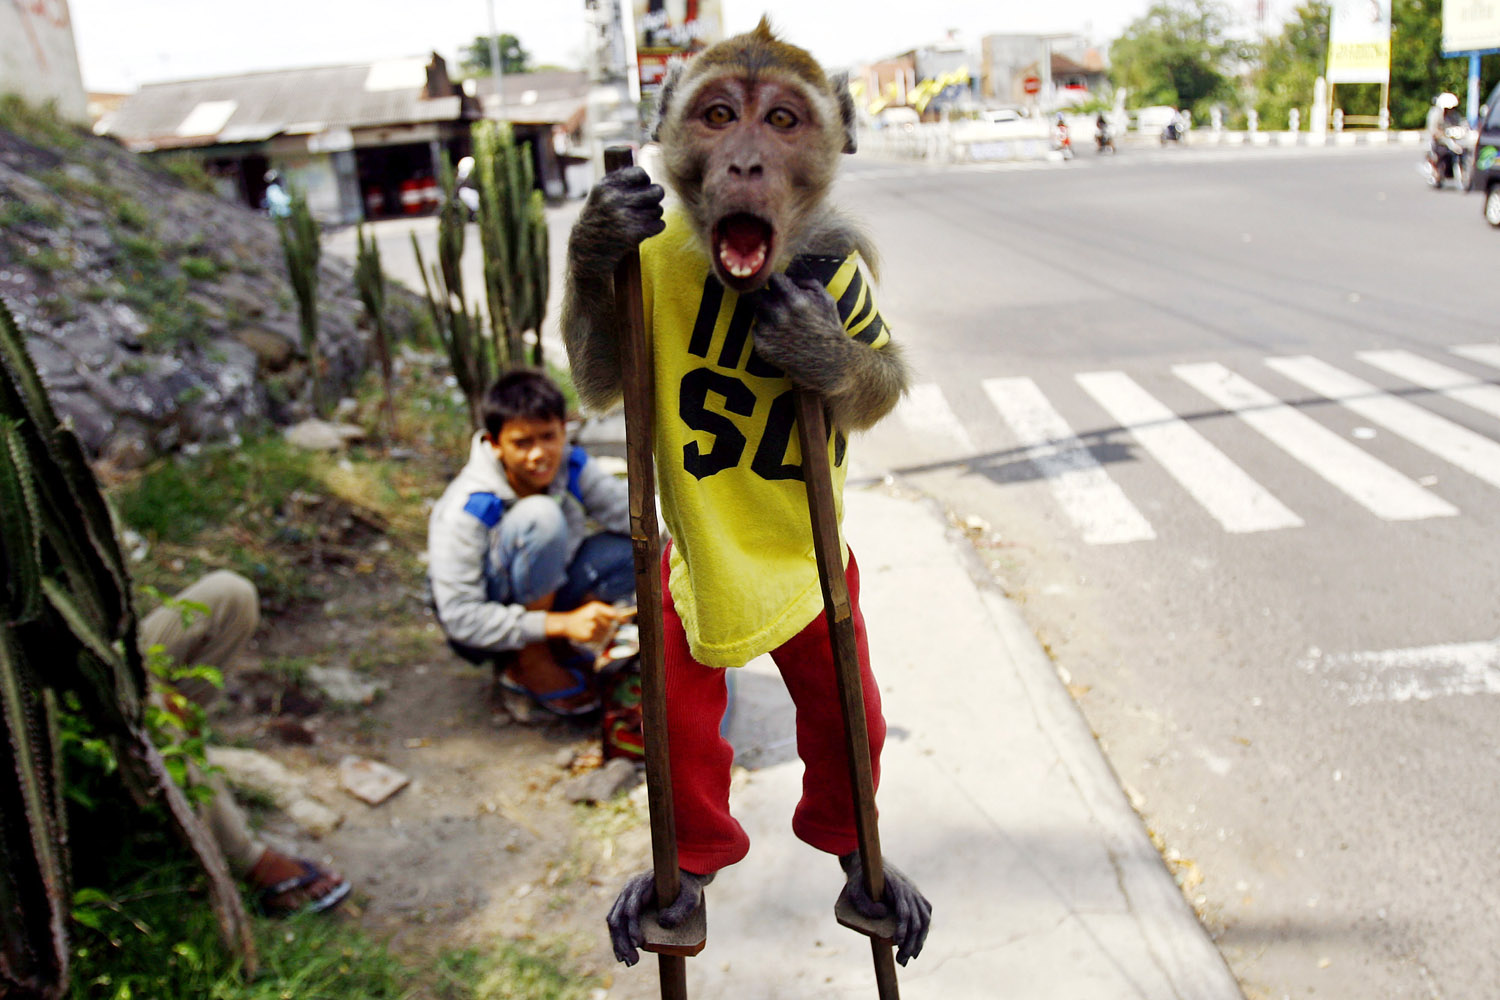 Street Monkey Performance in Solo